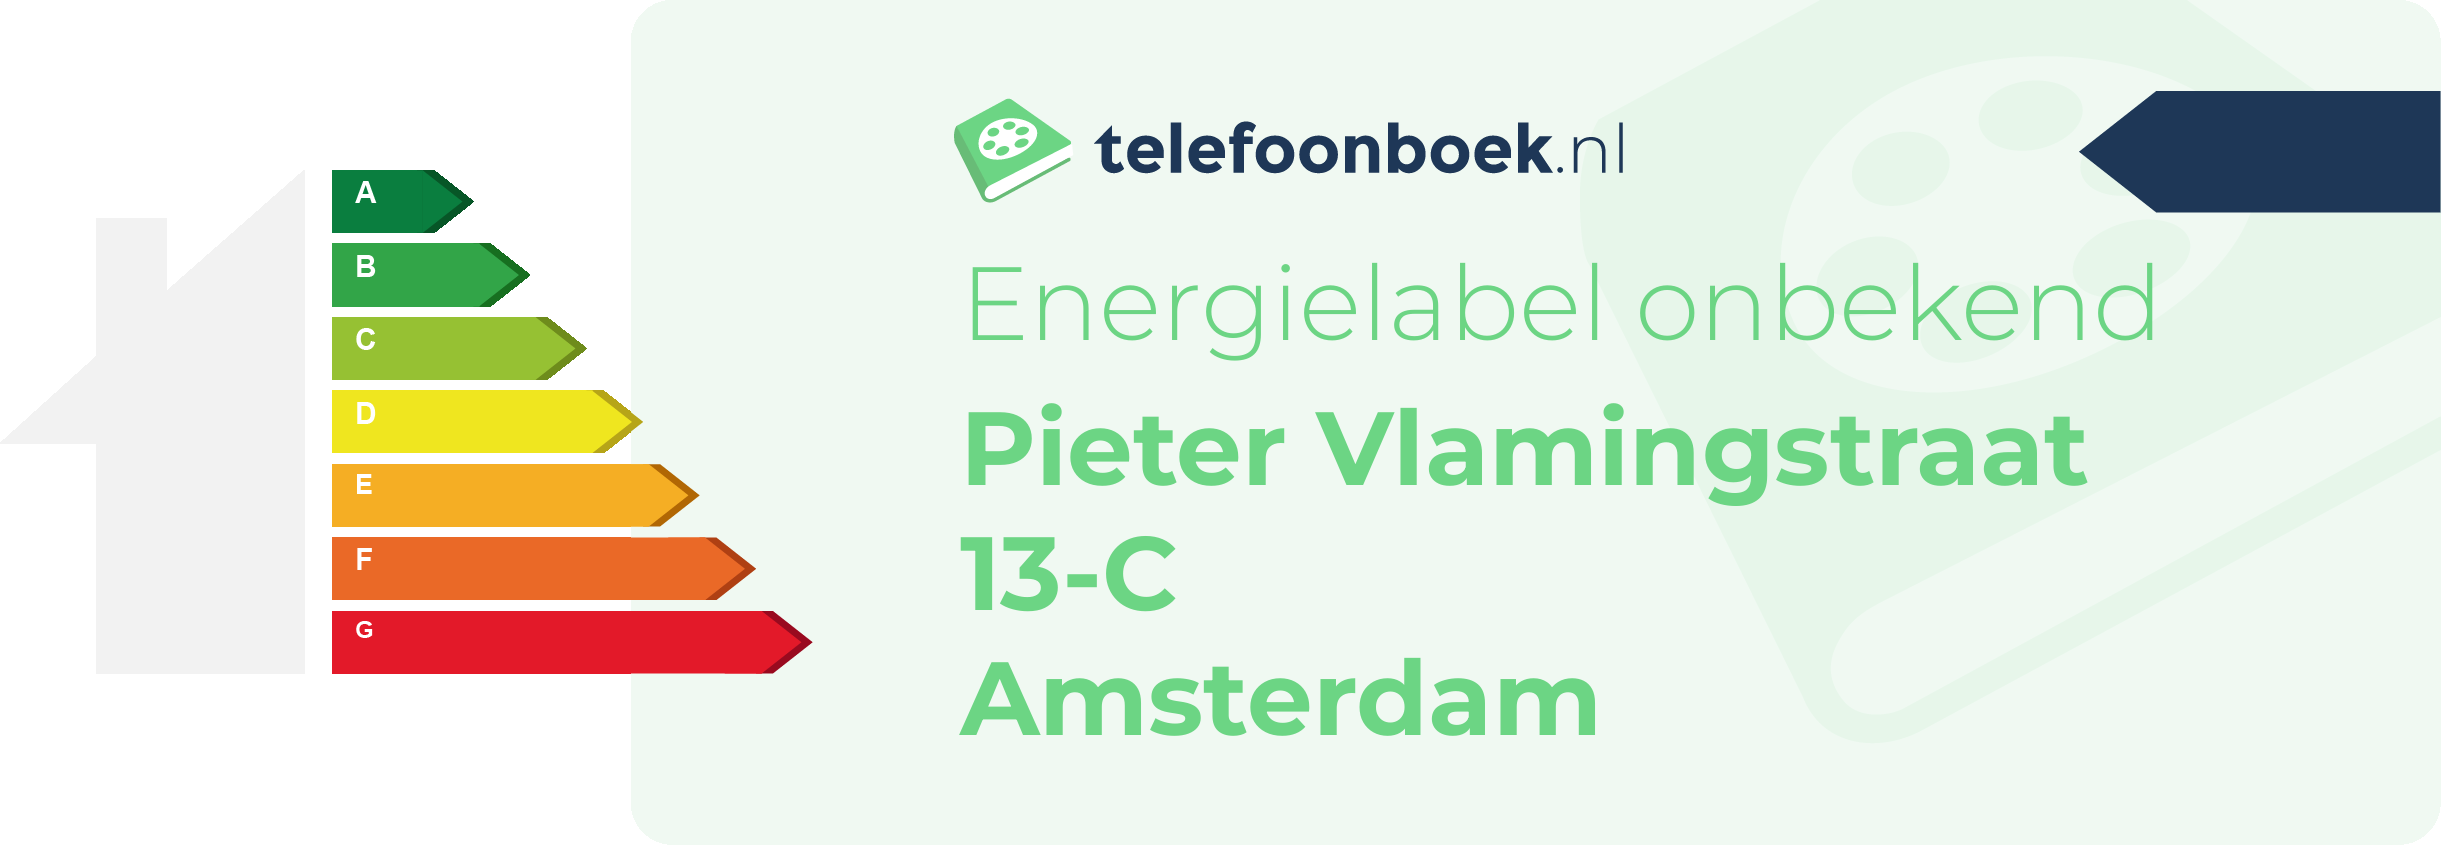 Energielabel Pieter Vlamingstraat 13-C Amsterdam